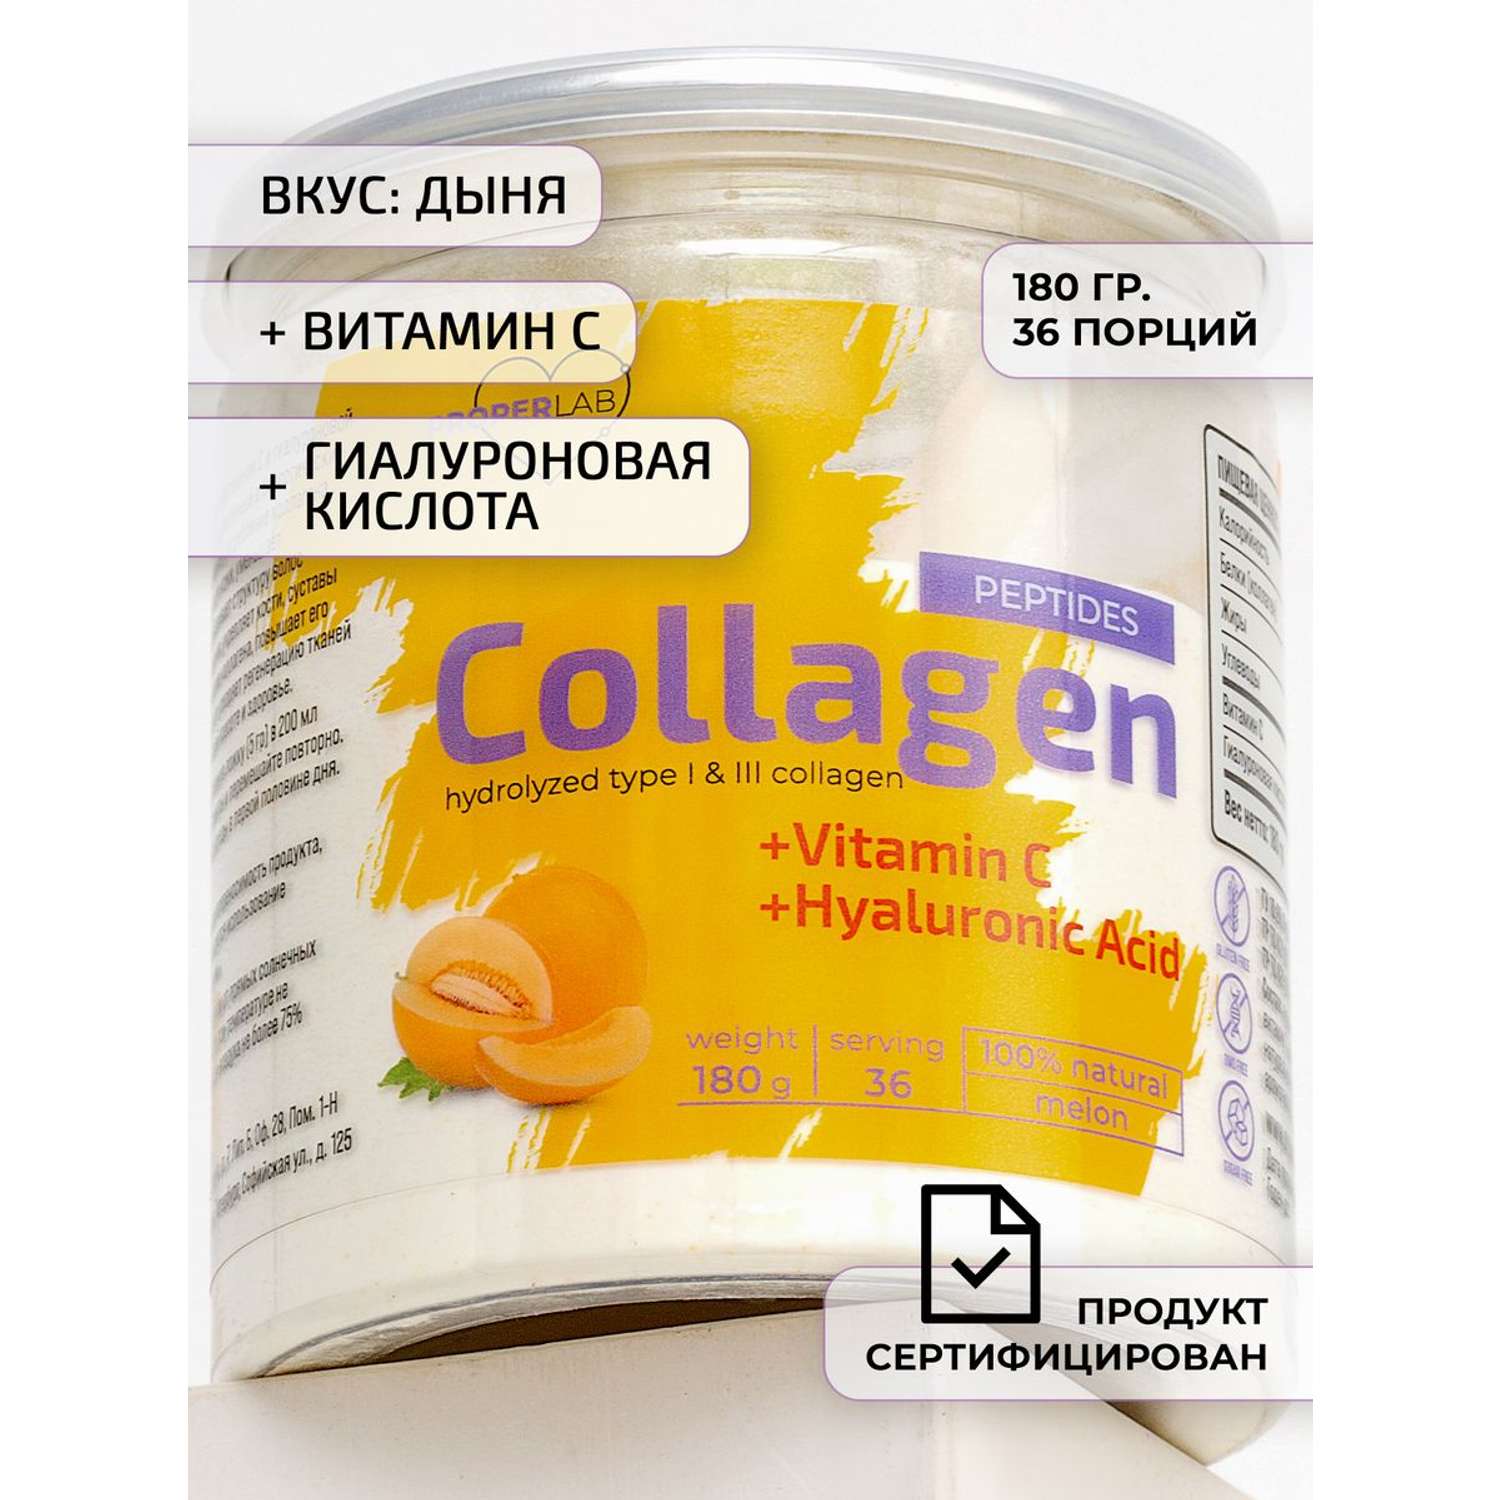 Коллаген + Витамин С ProperLab с добавлением гиалуроновой кислоты - фото 1